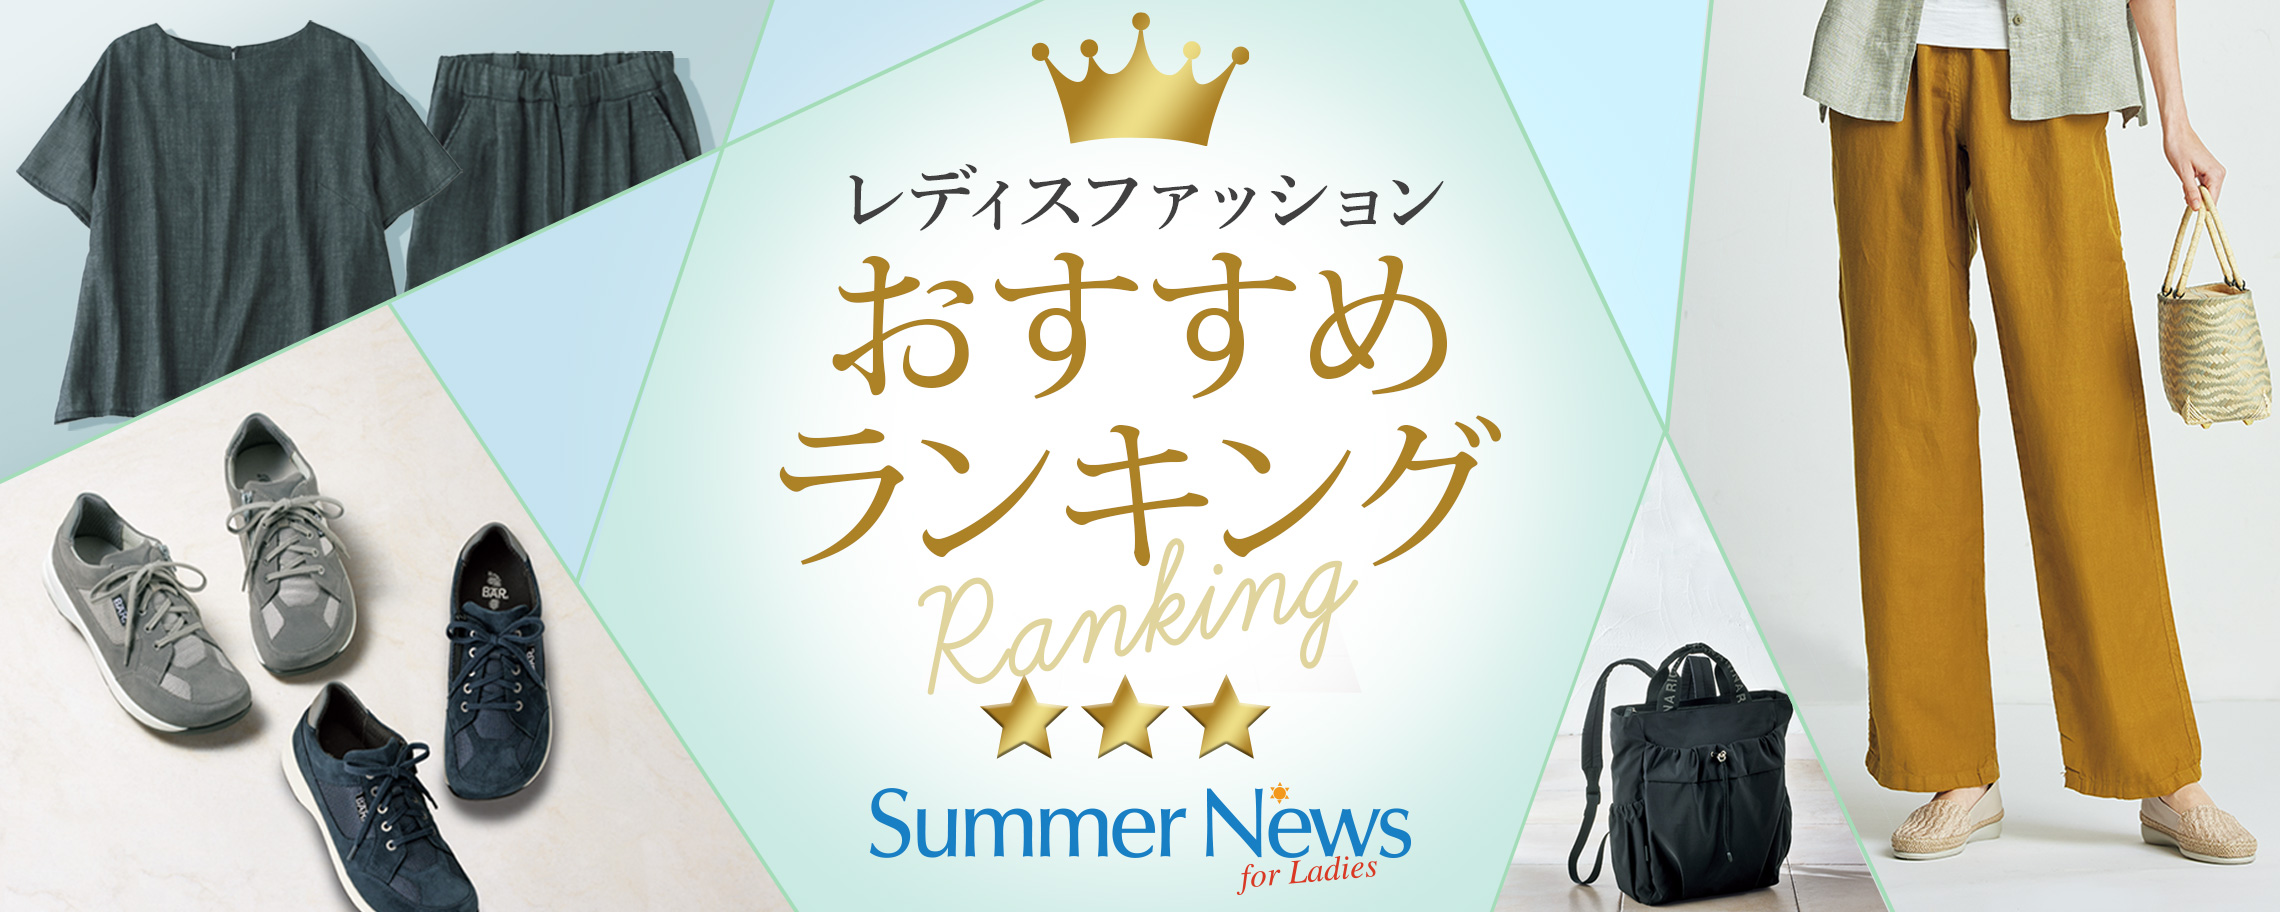 Summer News for Ladies掲載　人気おすすめランキング BEST20特集